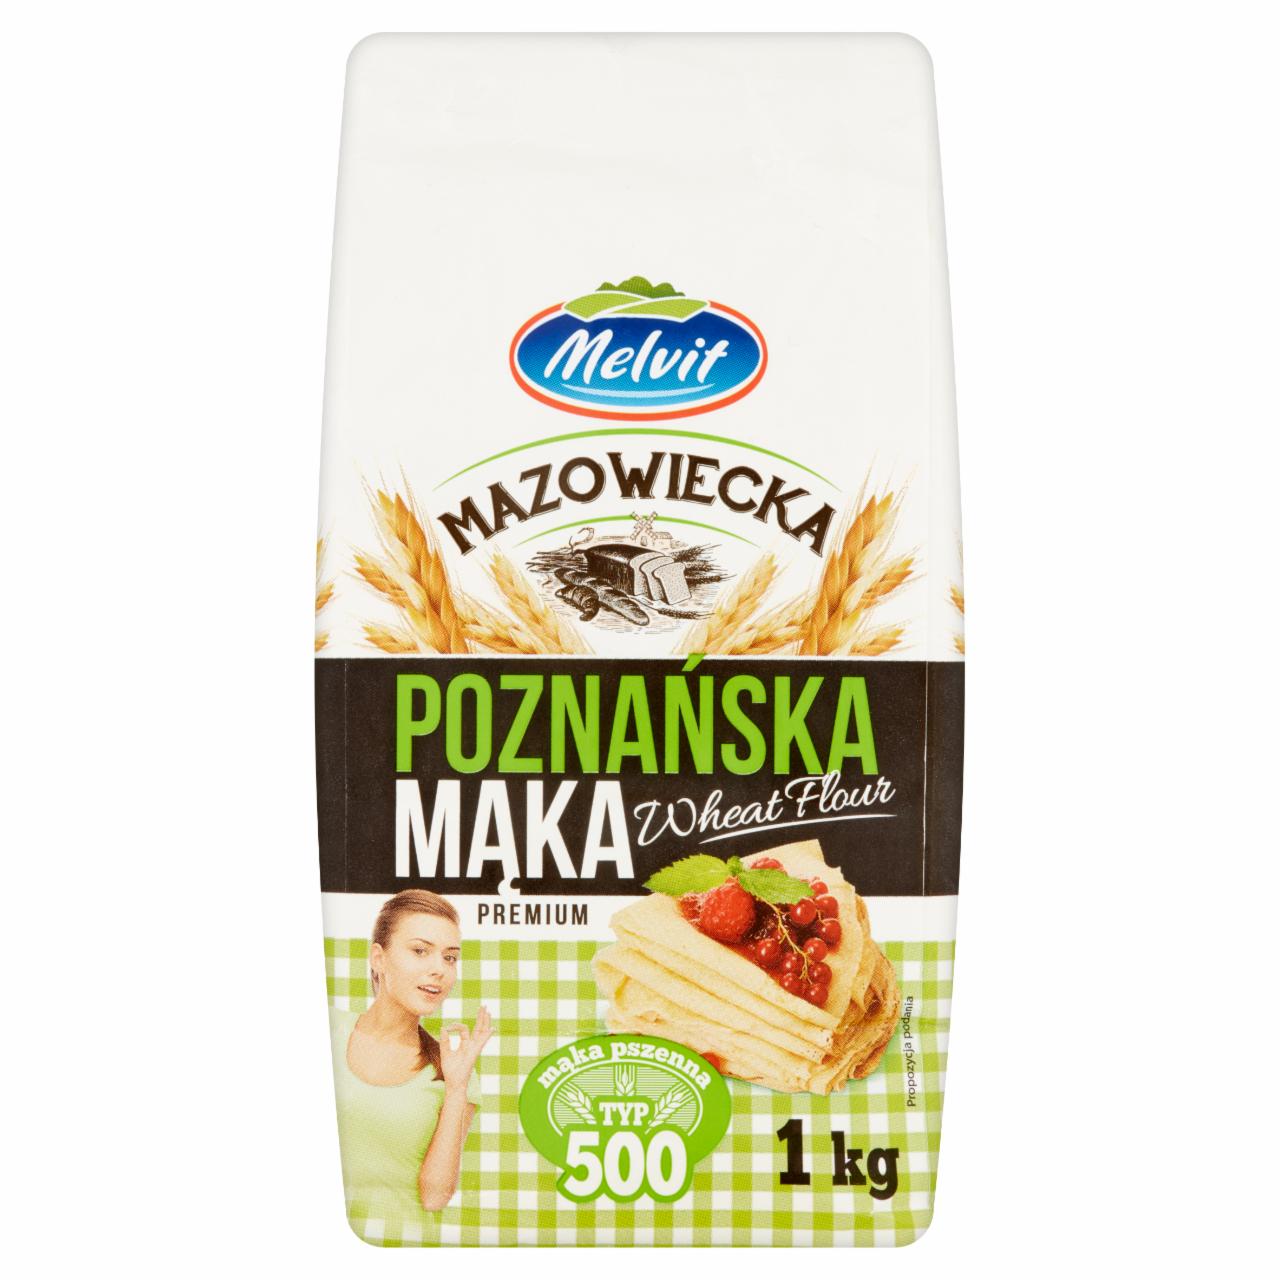 Zdjęcia - Melvit Mazowiecka Mąka poznańska pszenna typ 500 1 kg